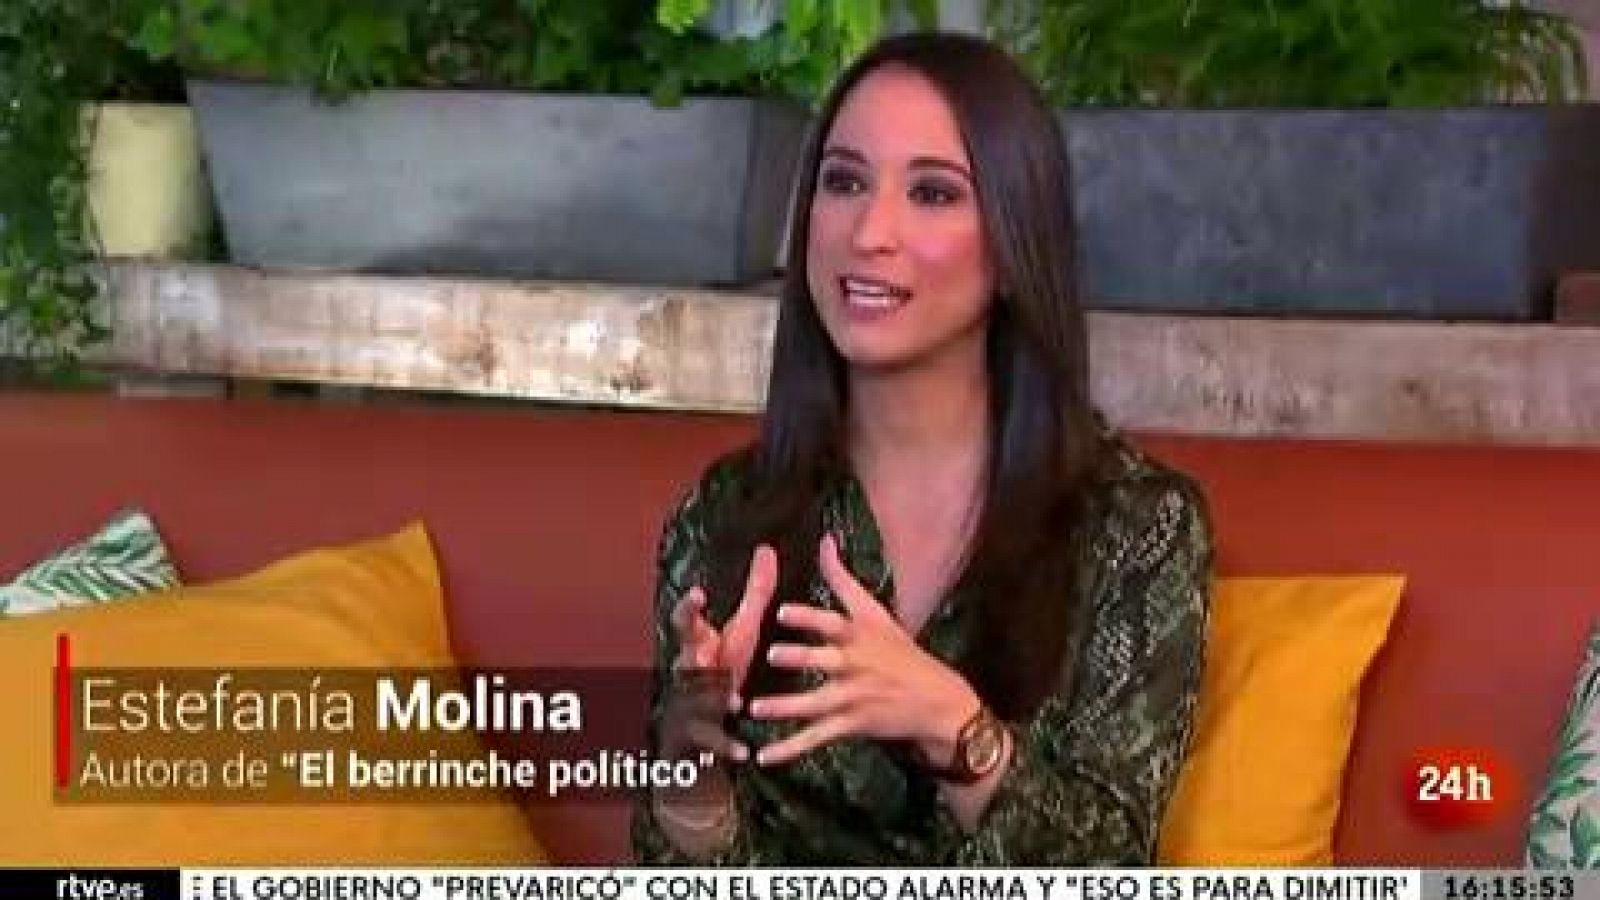 Parlamento - La entrevista - Estefanía Molina, autora de "El berrinche político" - 17/07/2021